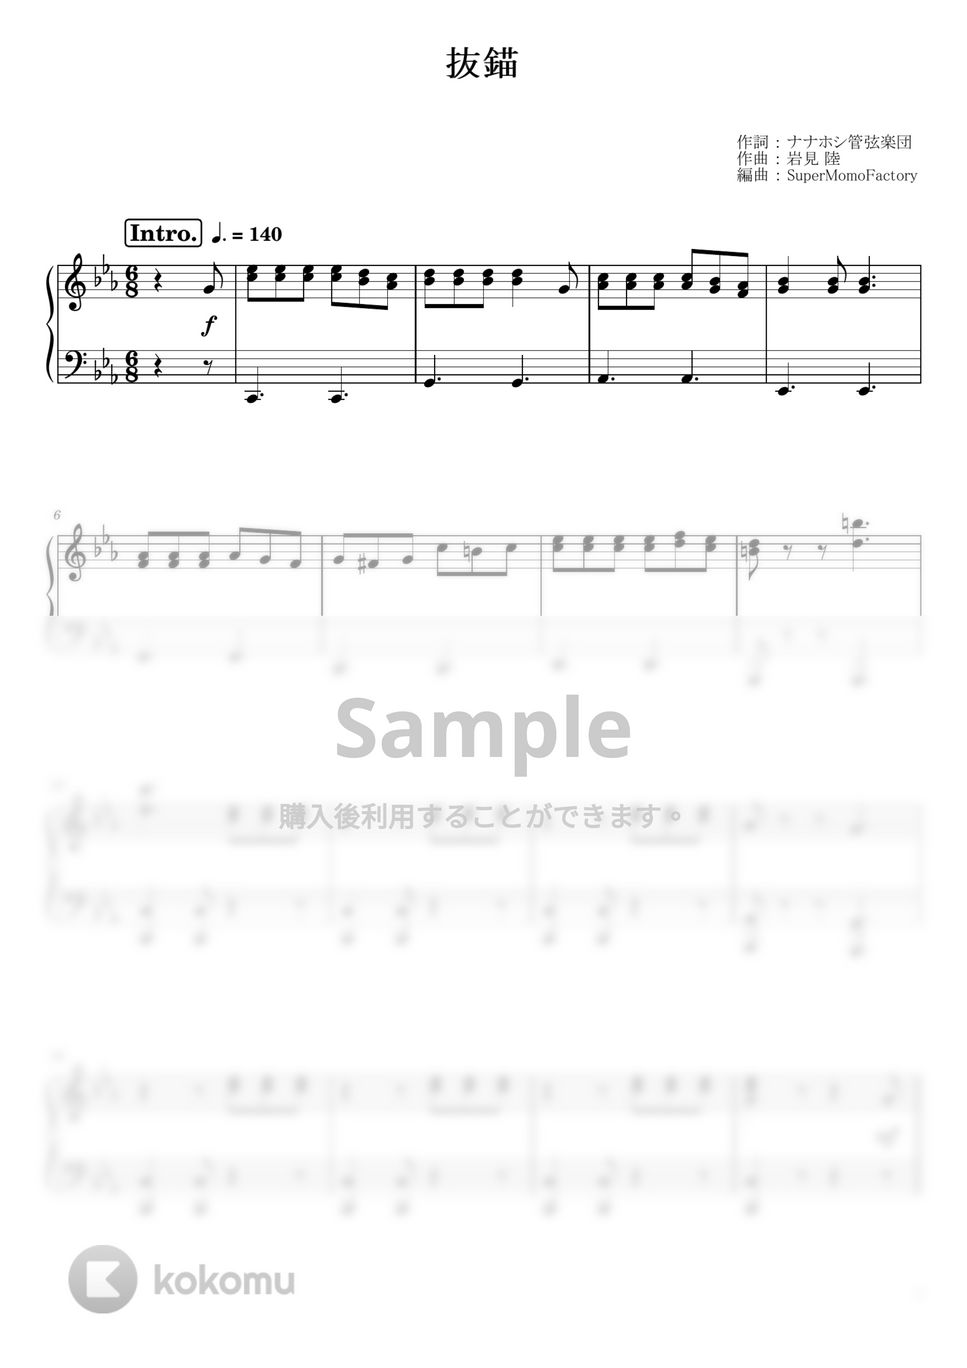 ナナホシ管弦楽団 - 抜錨 (ピアノソロ / 中級) by SuperMomoFactory